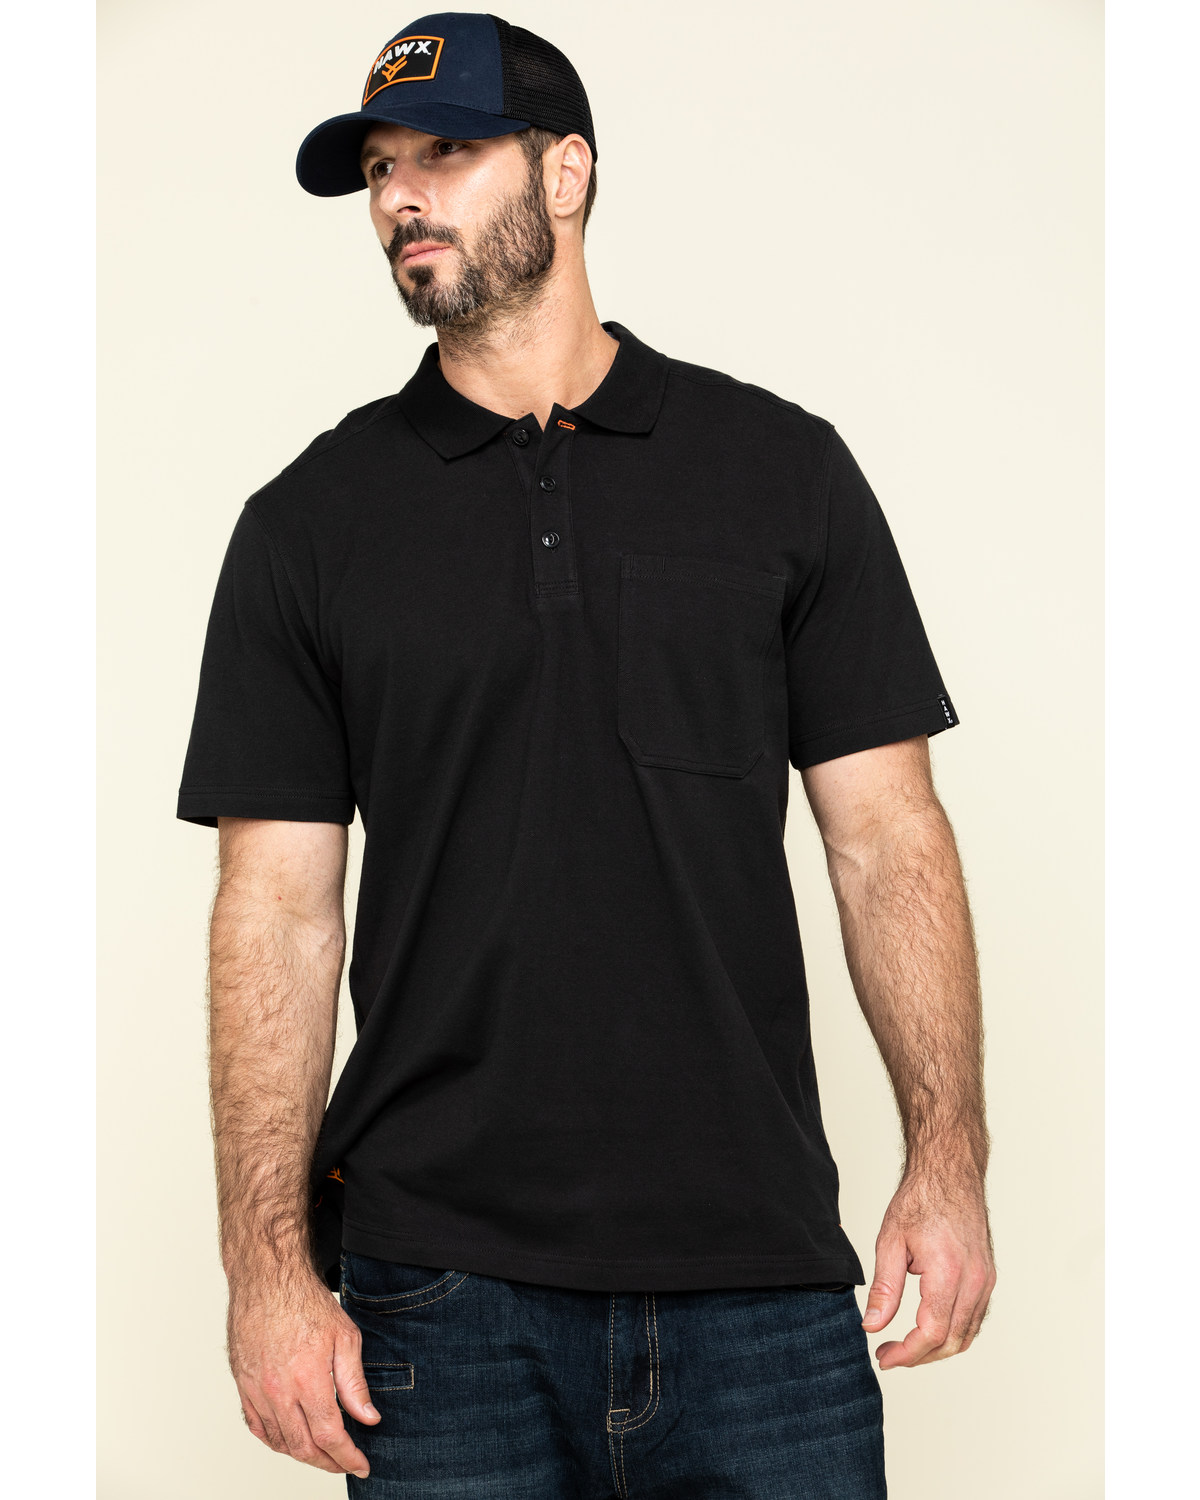 Herren Poloshirt Workwear Arbeitskleidung bis 4XL von PREMIER PR618 NEU 